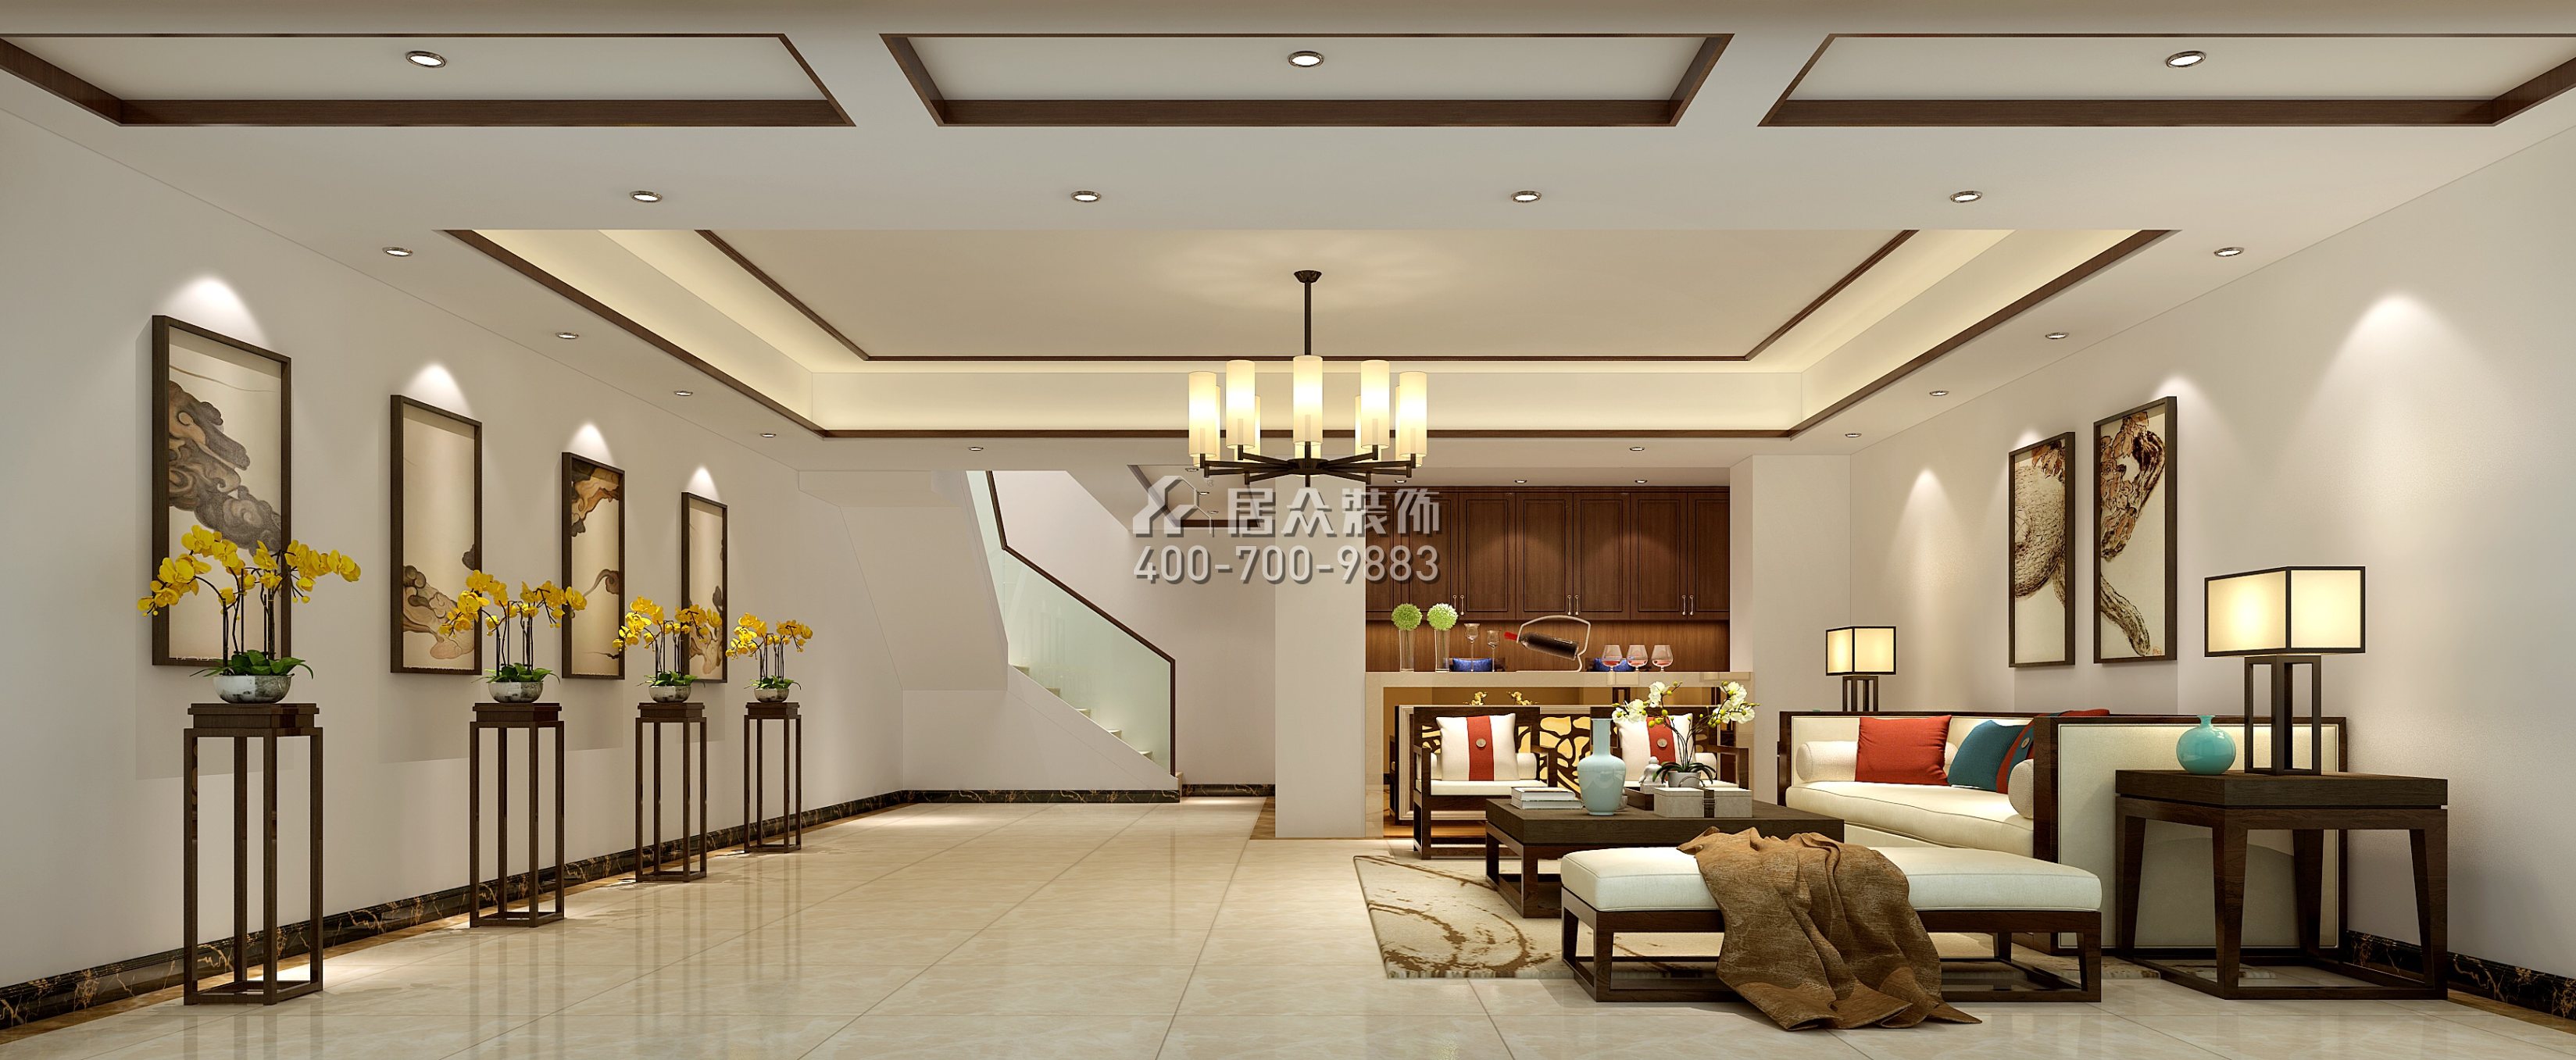 萬林湖400平方米中式風格別墅戶型客廳裝修效果圖